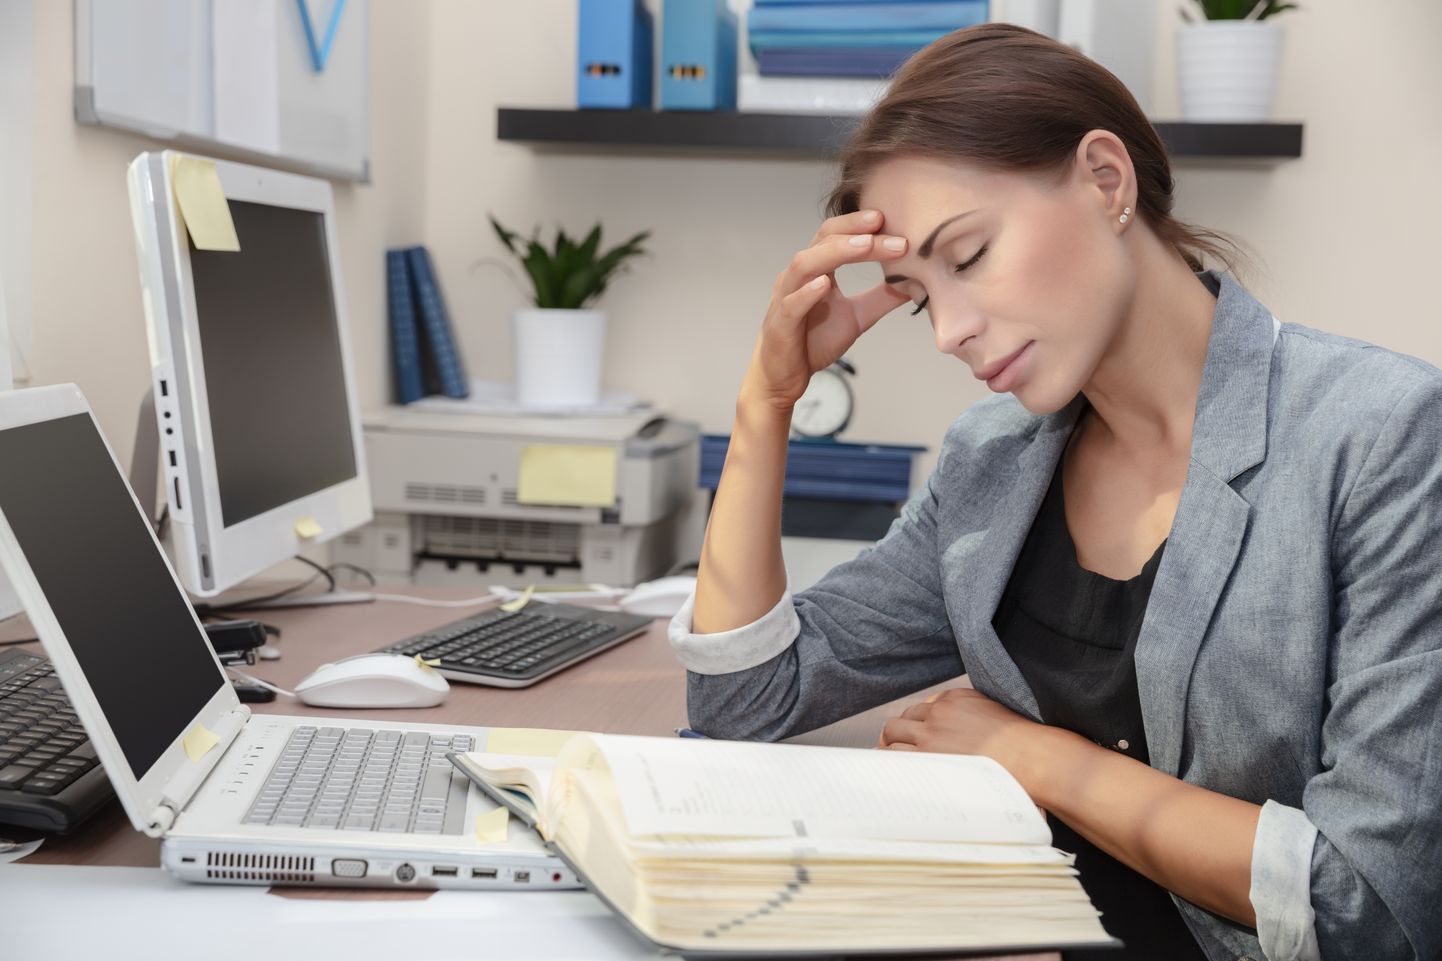 Pidev tööstress hävitab tervist.